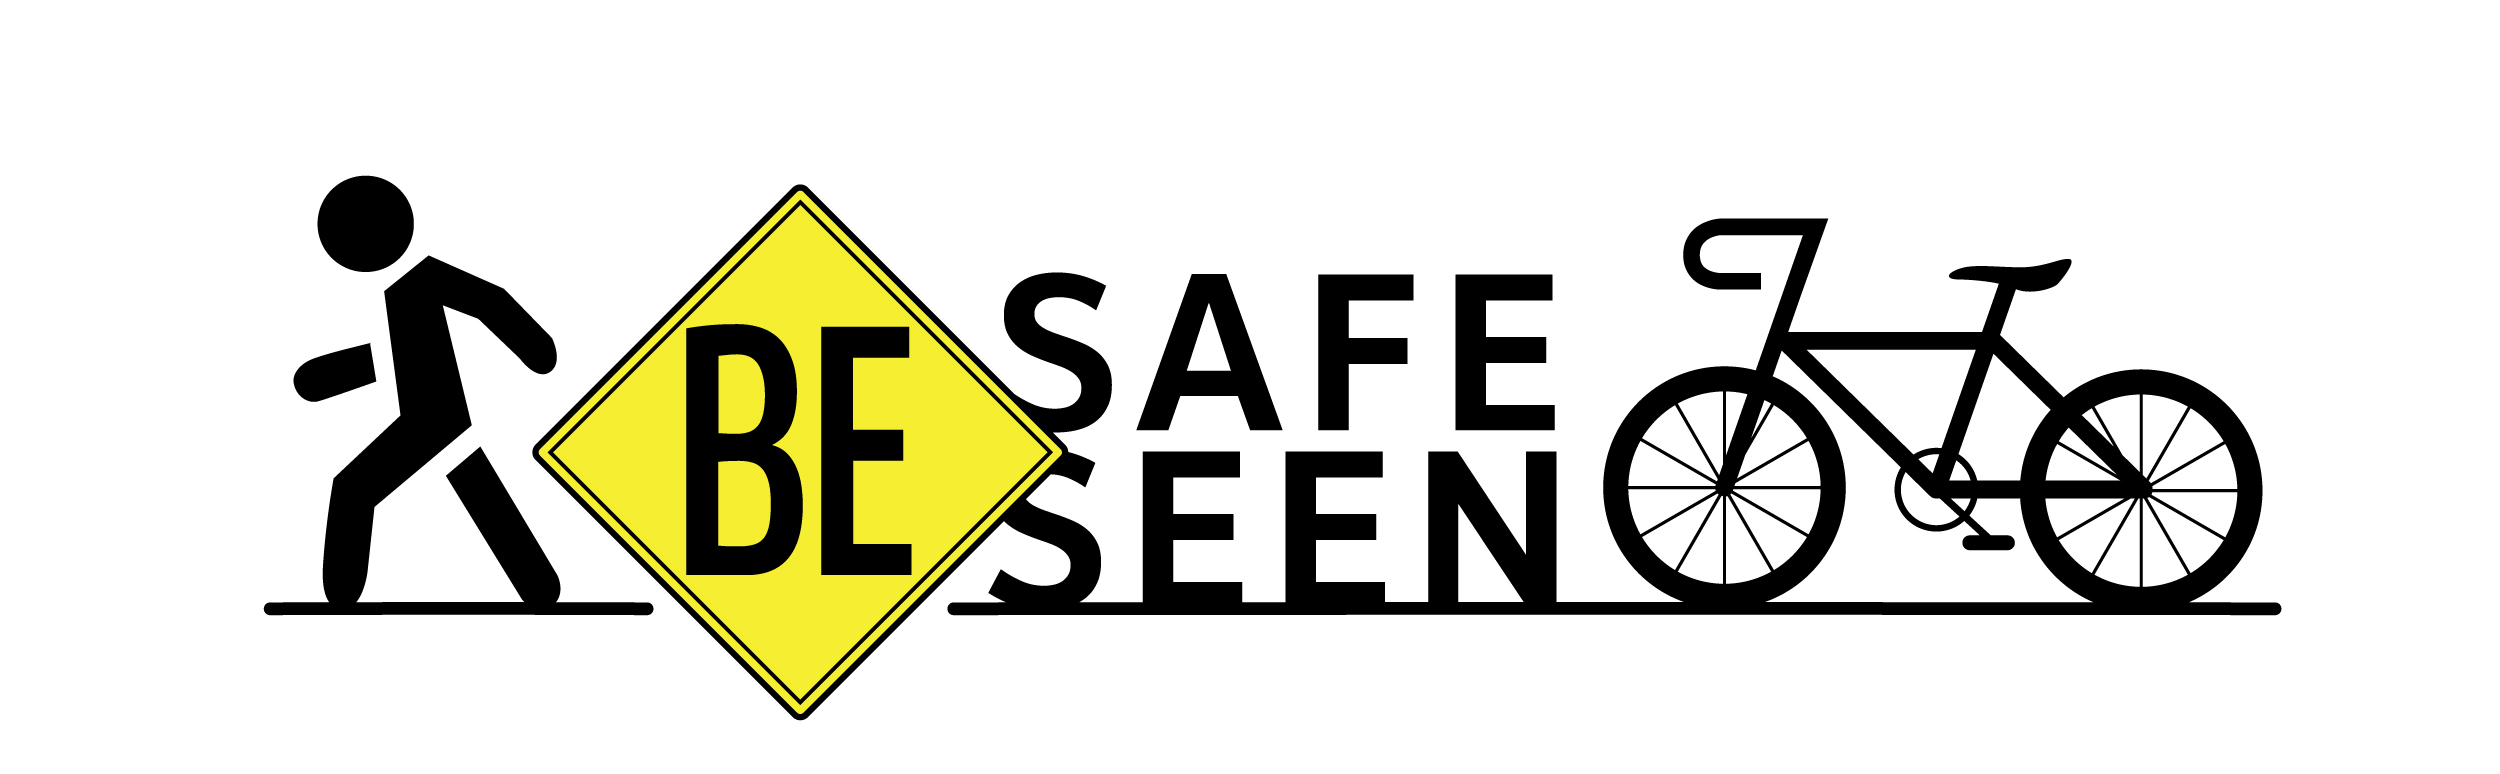 BE-Safe_Seen color.jpg